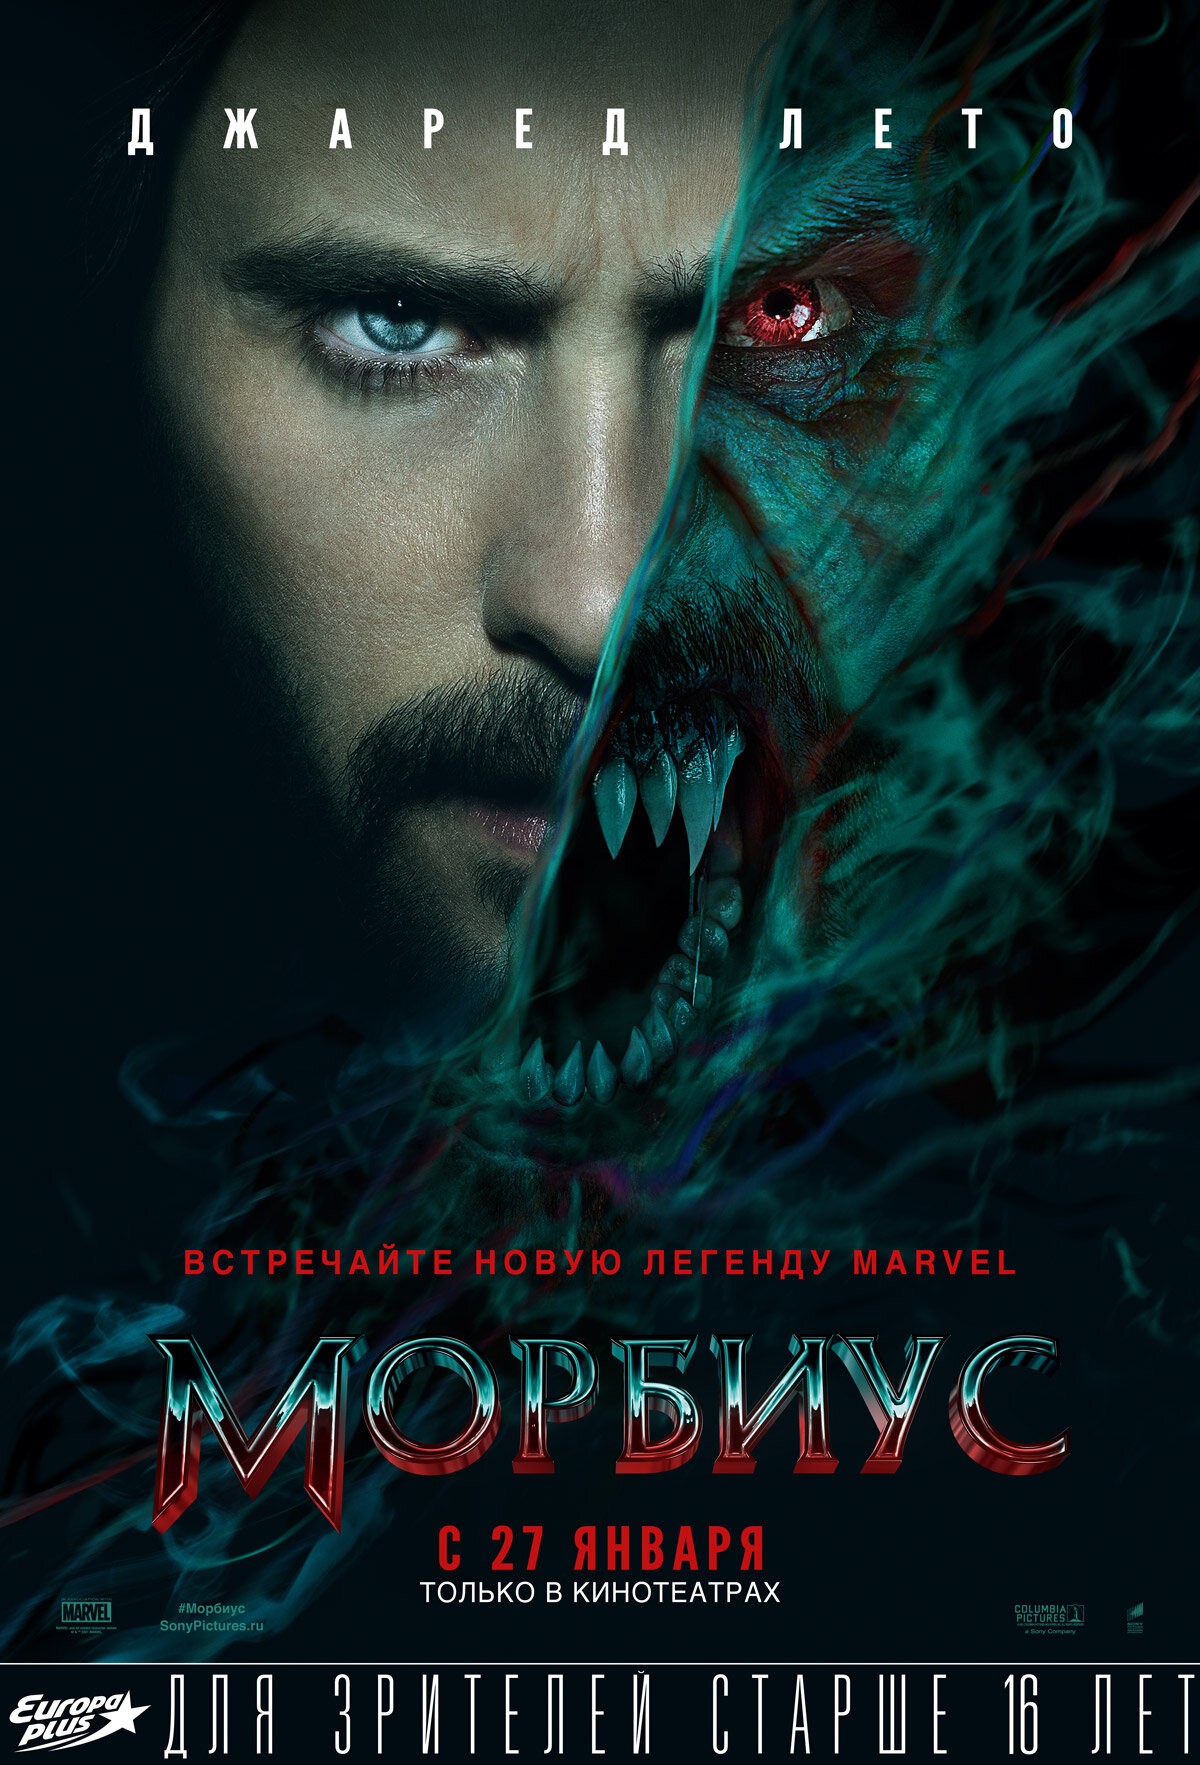 Морбиус - запланированная премьера: 27. 01. 2022. 